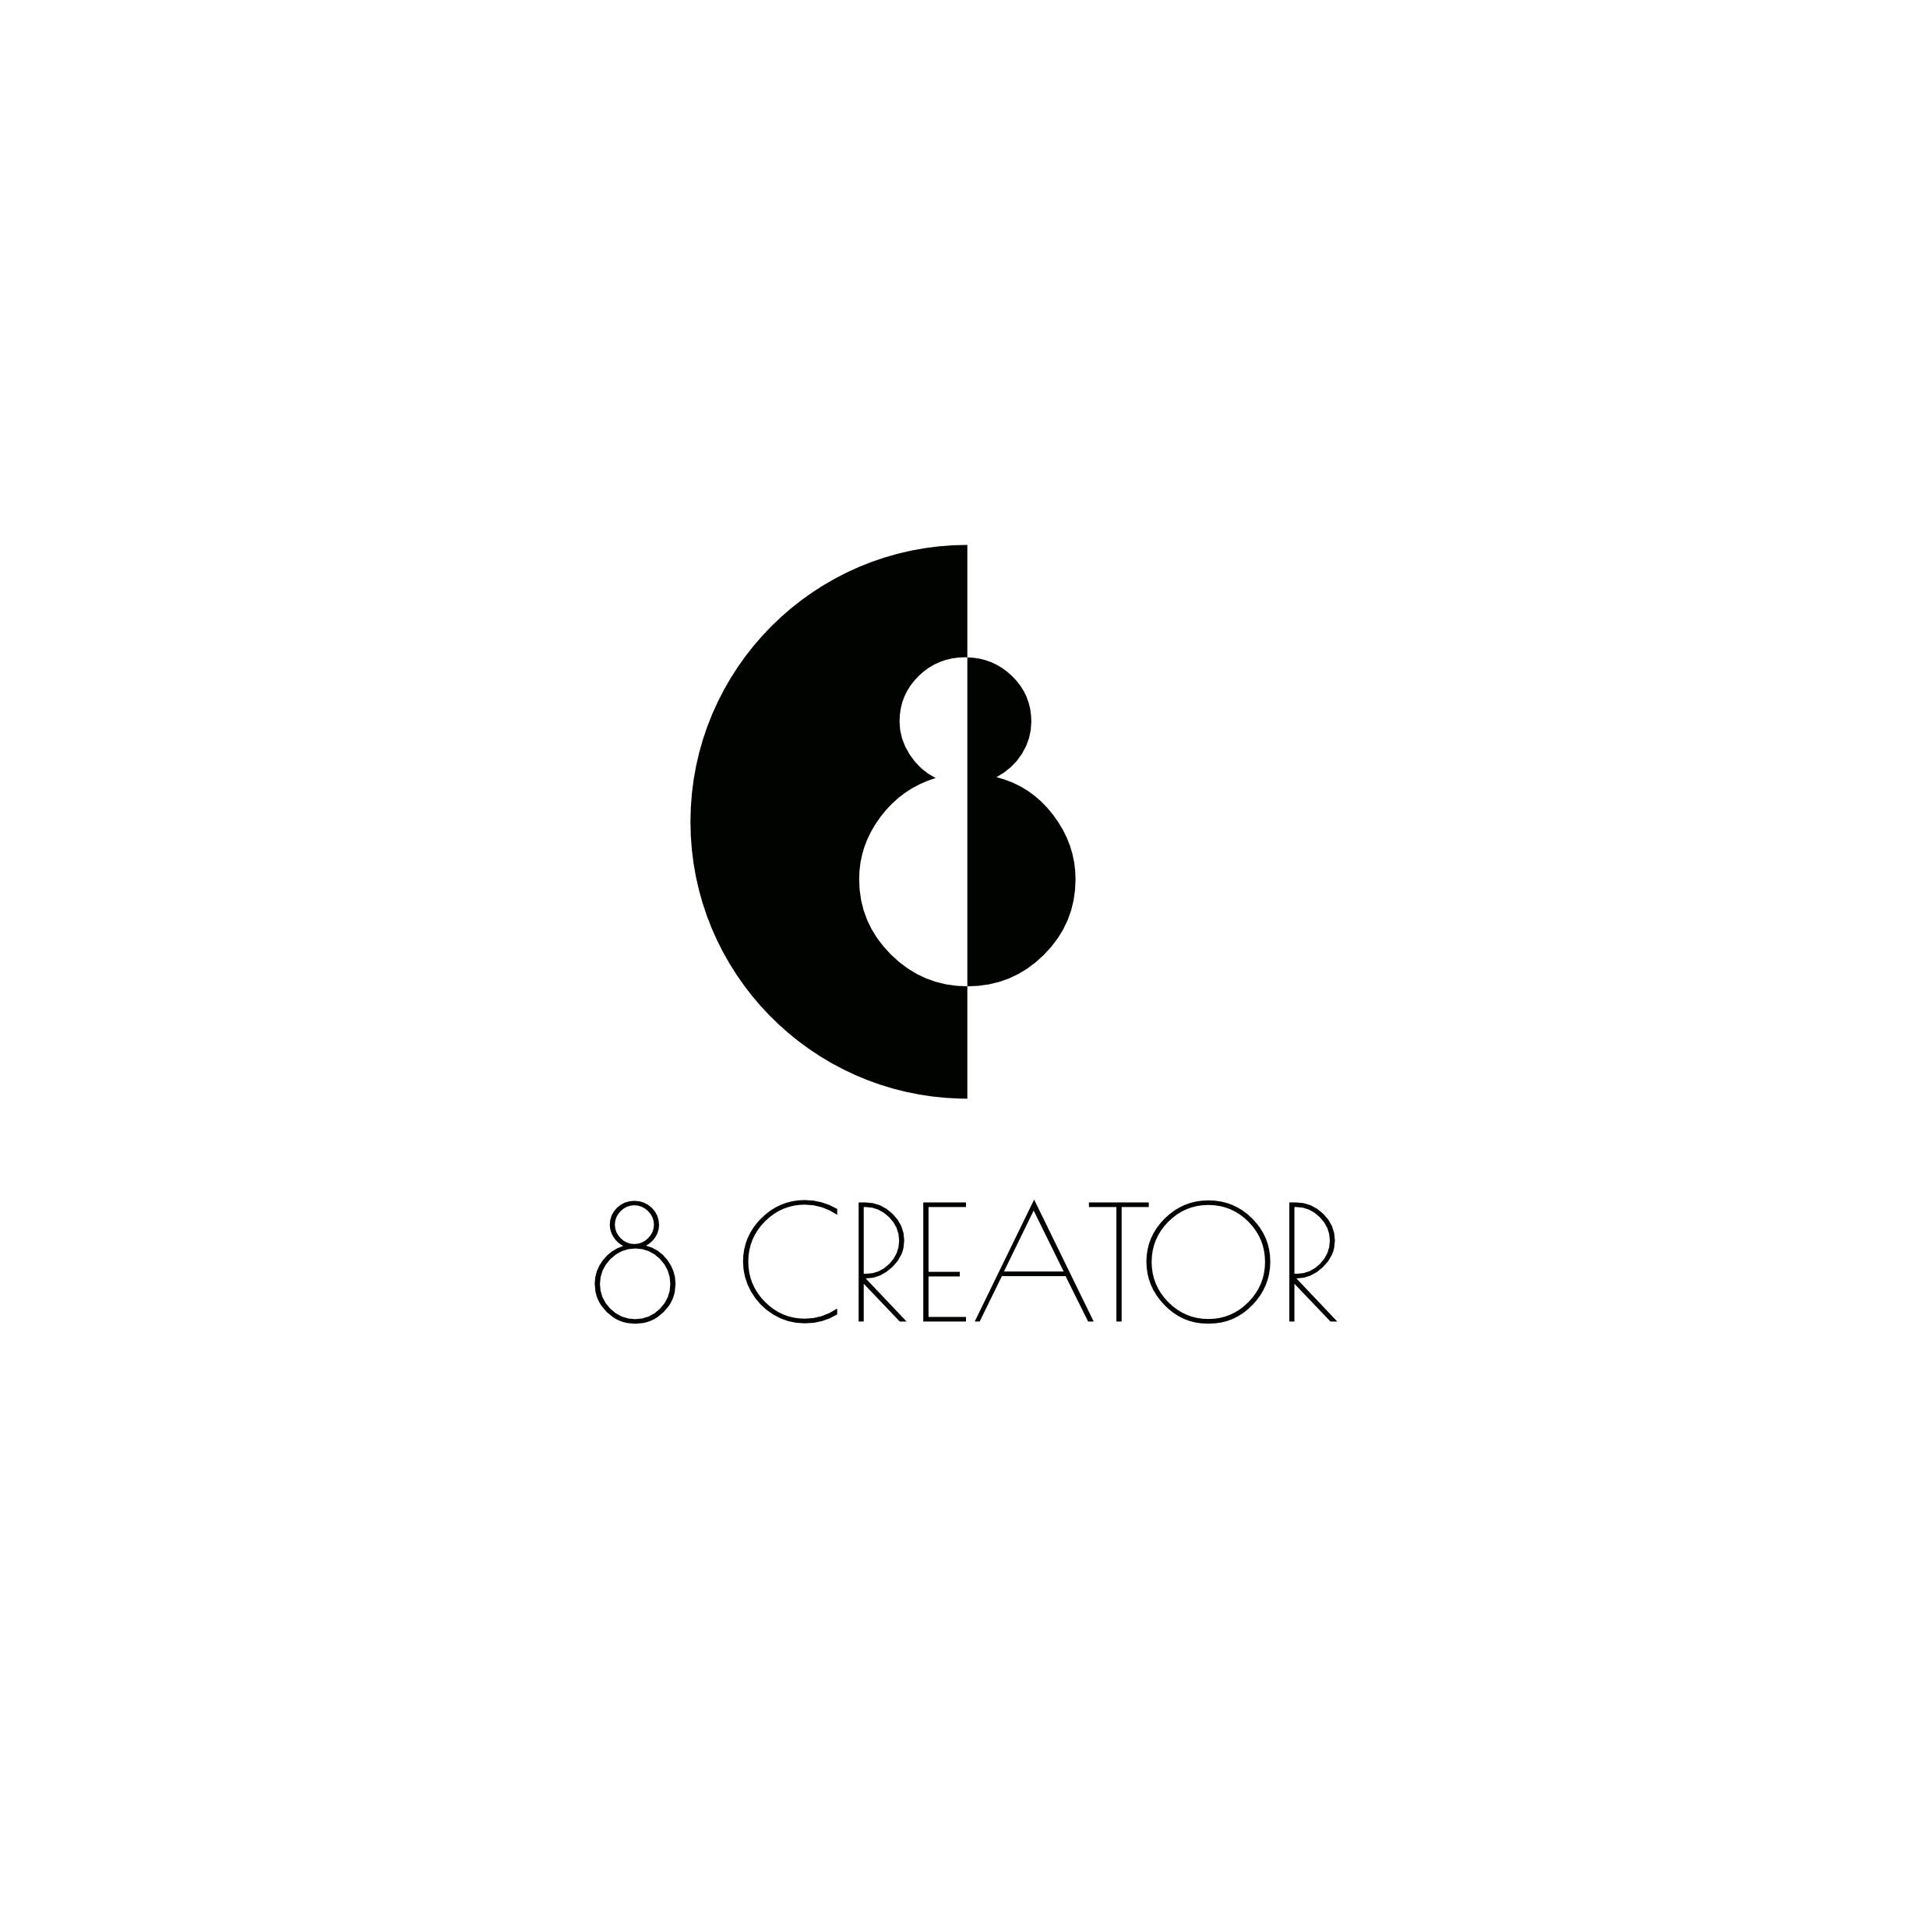 Logotipų kūrimas, logotipo dizainas verslui. Kūrybinis projektas 8 CREATOR. Asmeninis mentorius